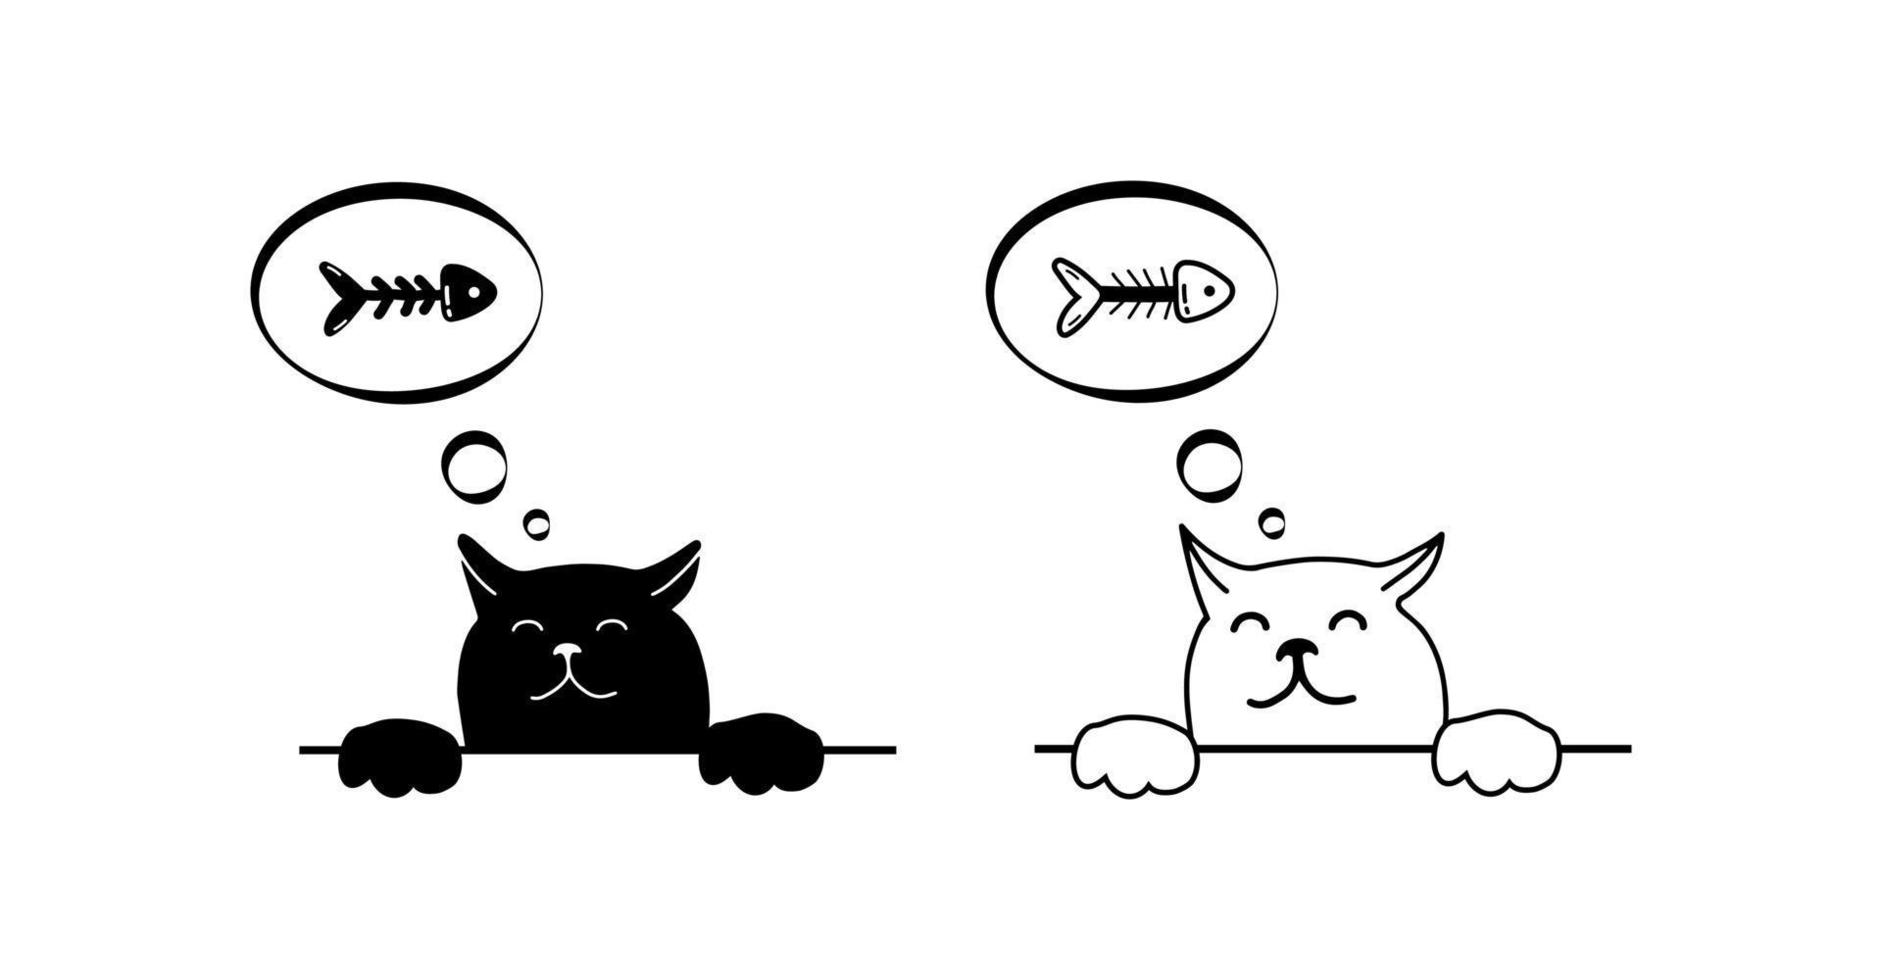 personagem de gato fofo sonhando com espinha de peixe, estampa animal isolada no fundo branco. desenho preto simples definido no estilo de contorno. vetor doodle modelo de impressão preto.